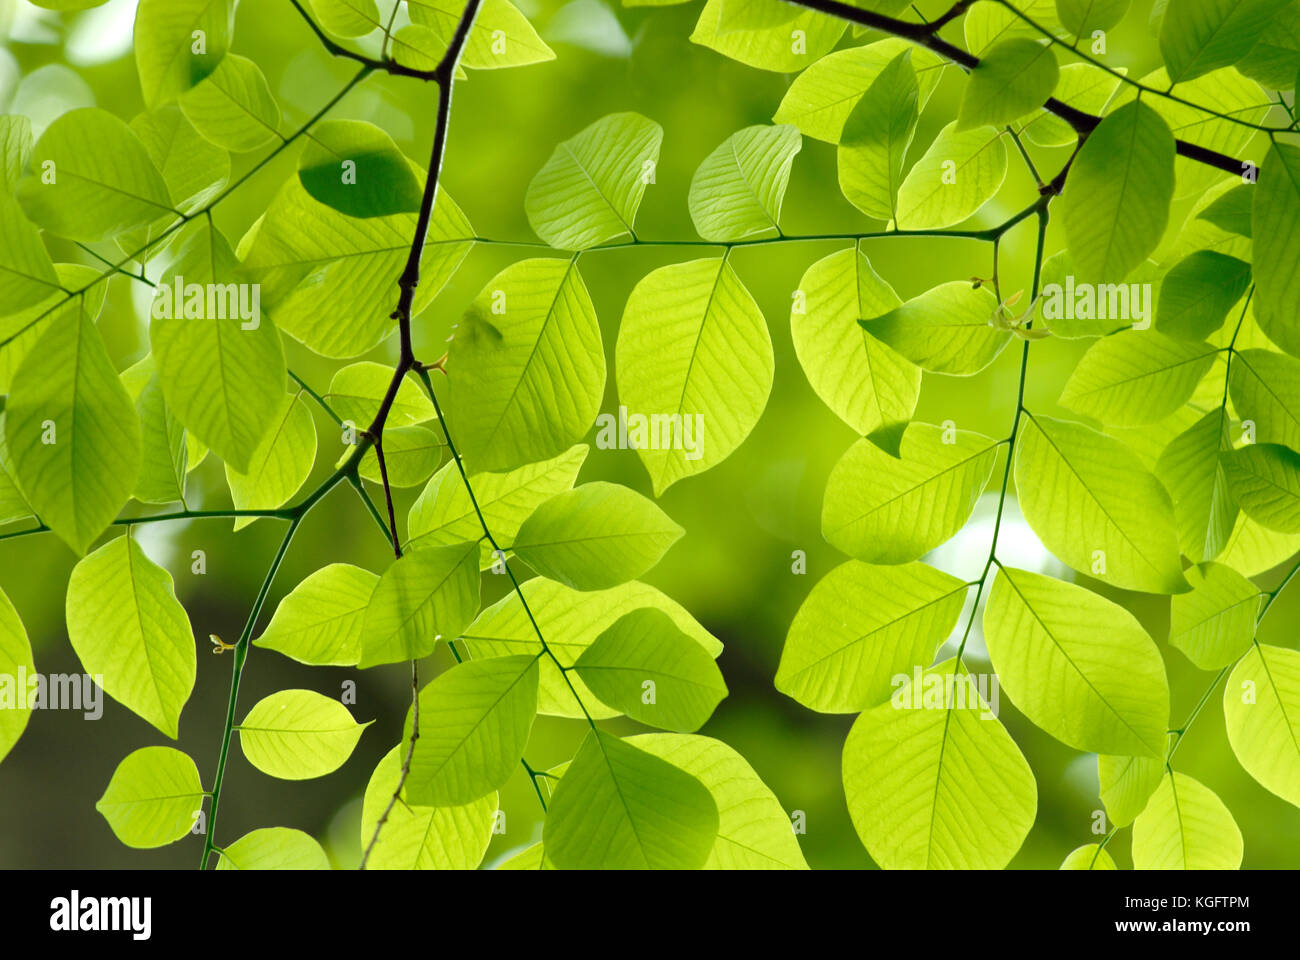 Las hojas verdes de fondo. Detalle de la sucursal de una empresa americana yellowwood mostrando la hermosa forma, color y patrón de hojas de este árbol nativo americano. Foto de stock